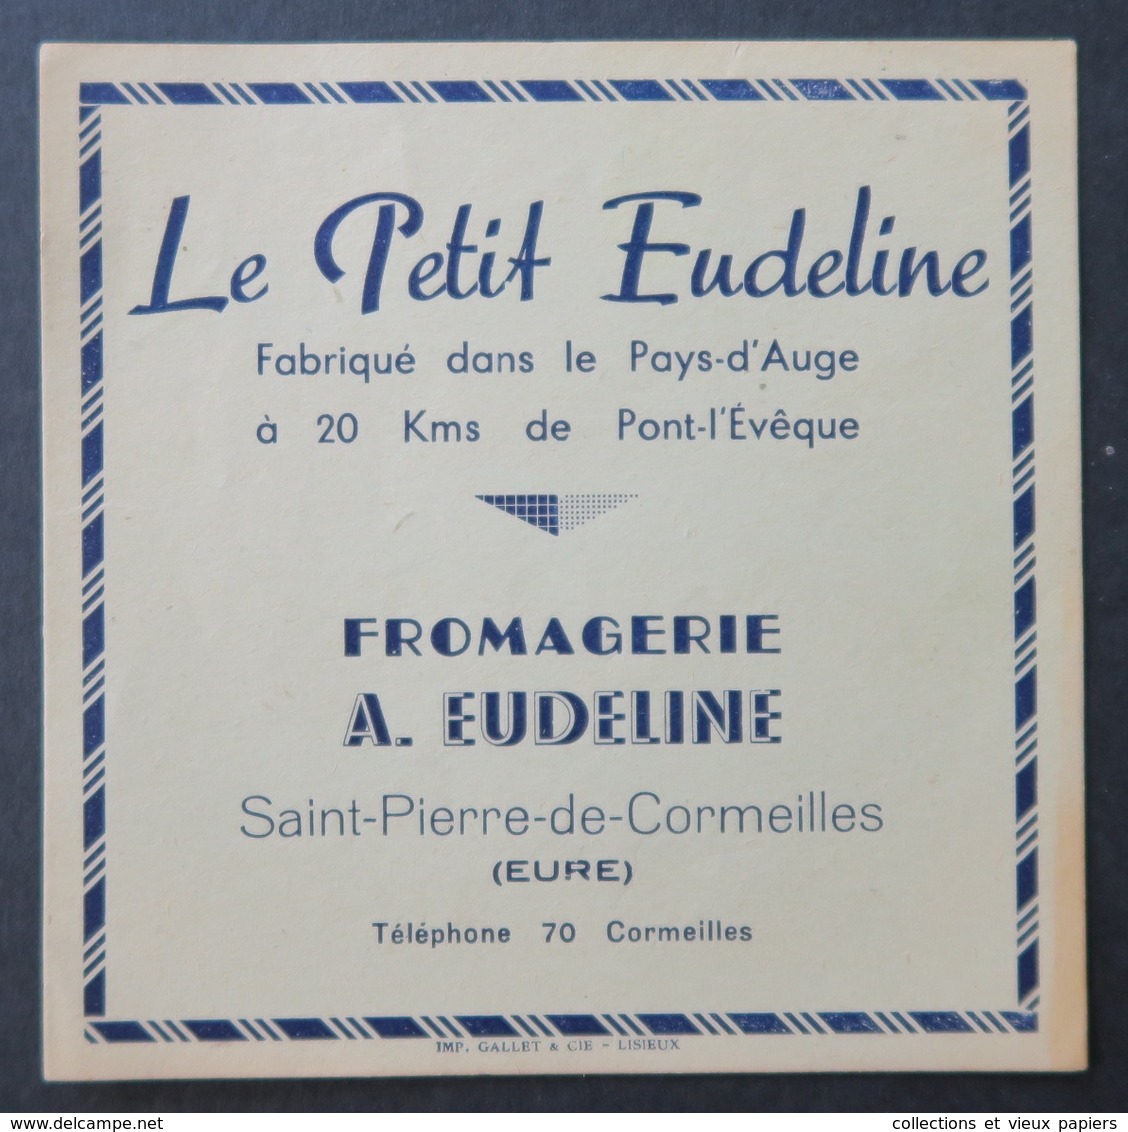 ancienne étiquette camembert A Eudeline St Pierre de Cormeilles 